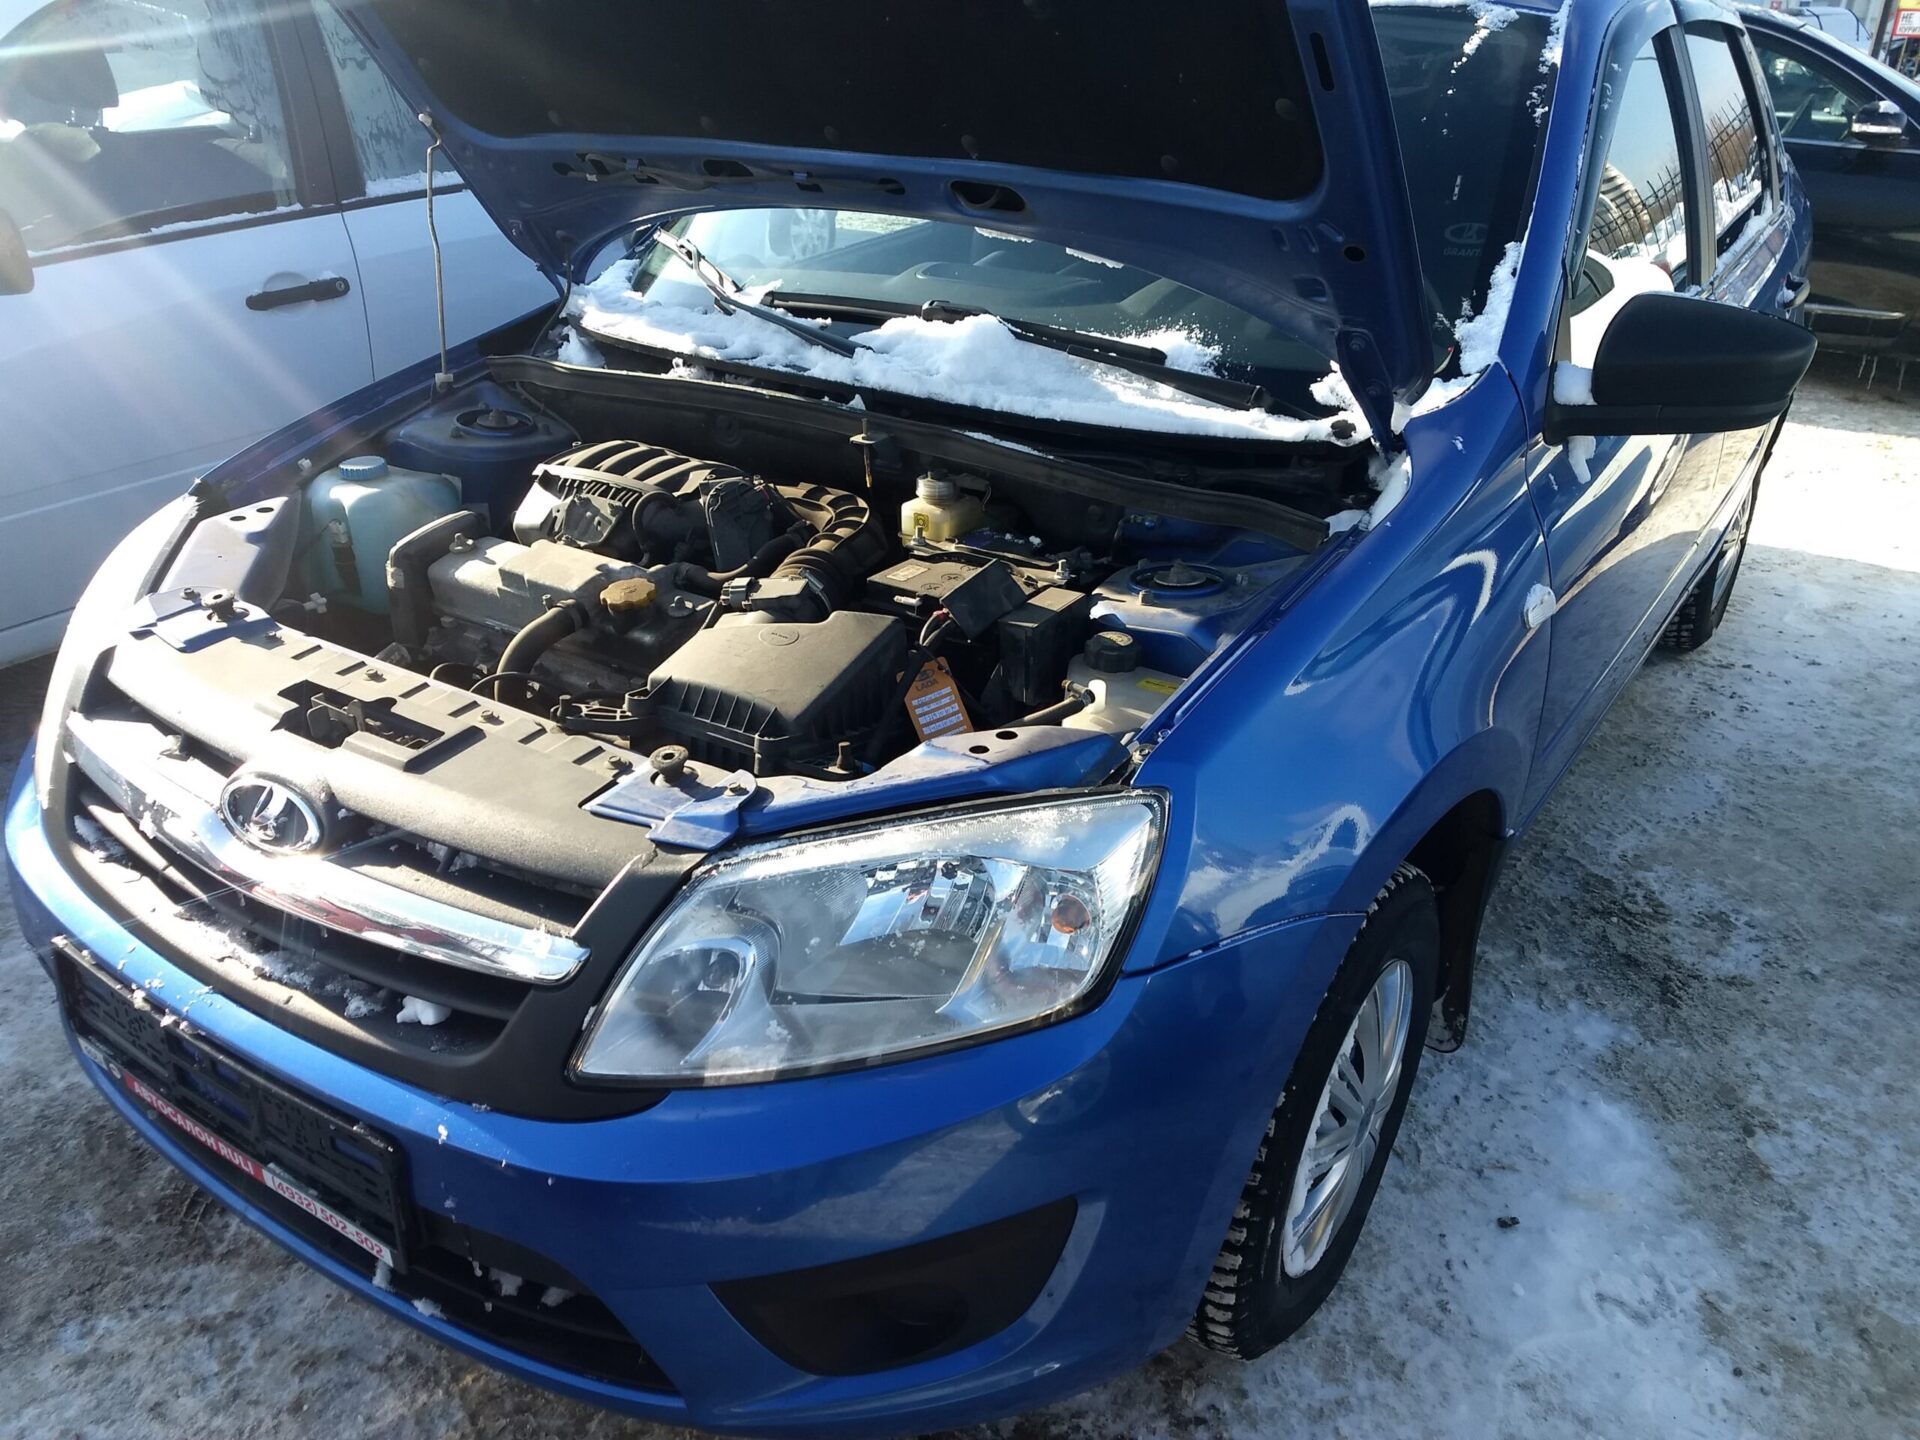 АвтоВАЗ намерен модернизировать 1,8-литровый двигатель ВАЗ-21179 от LADA Vesta и XRAY